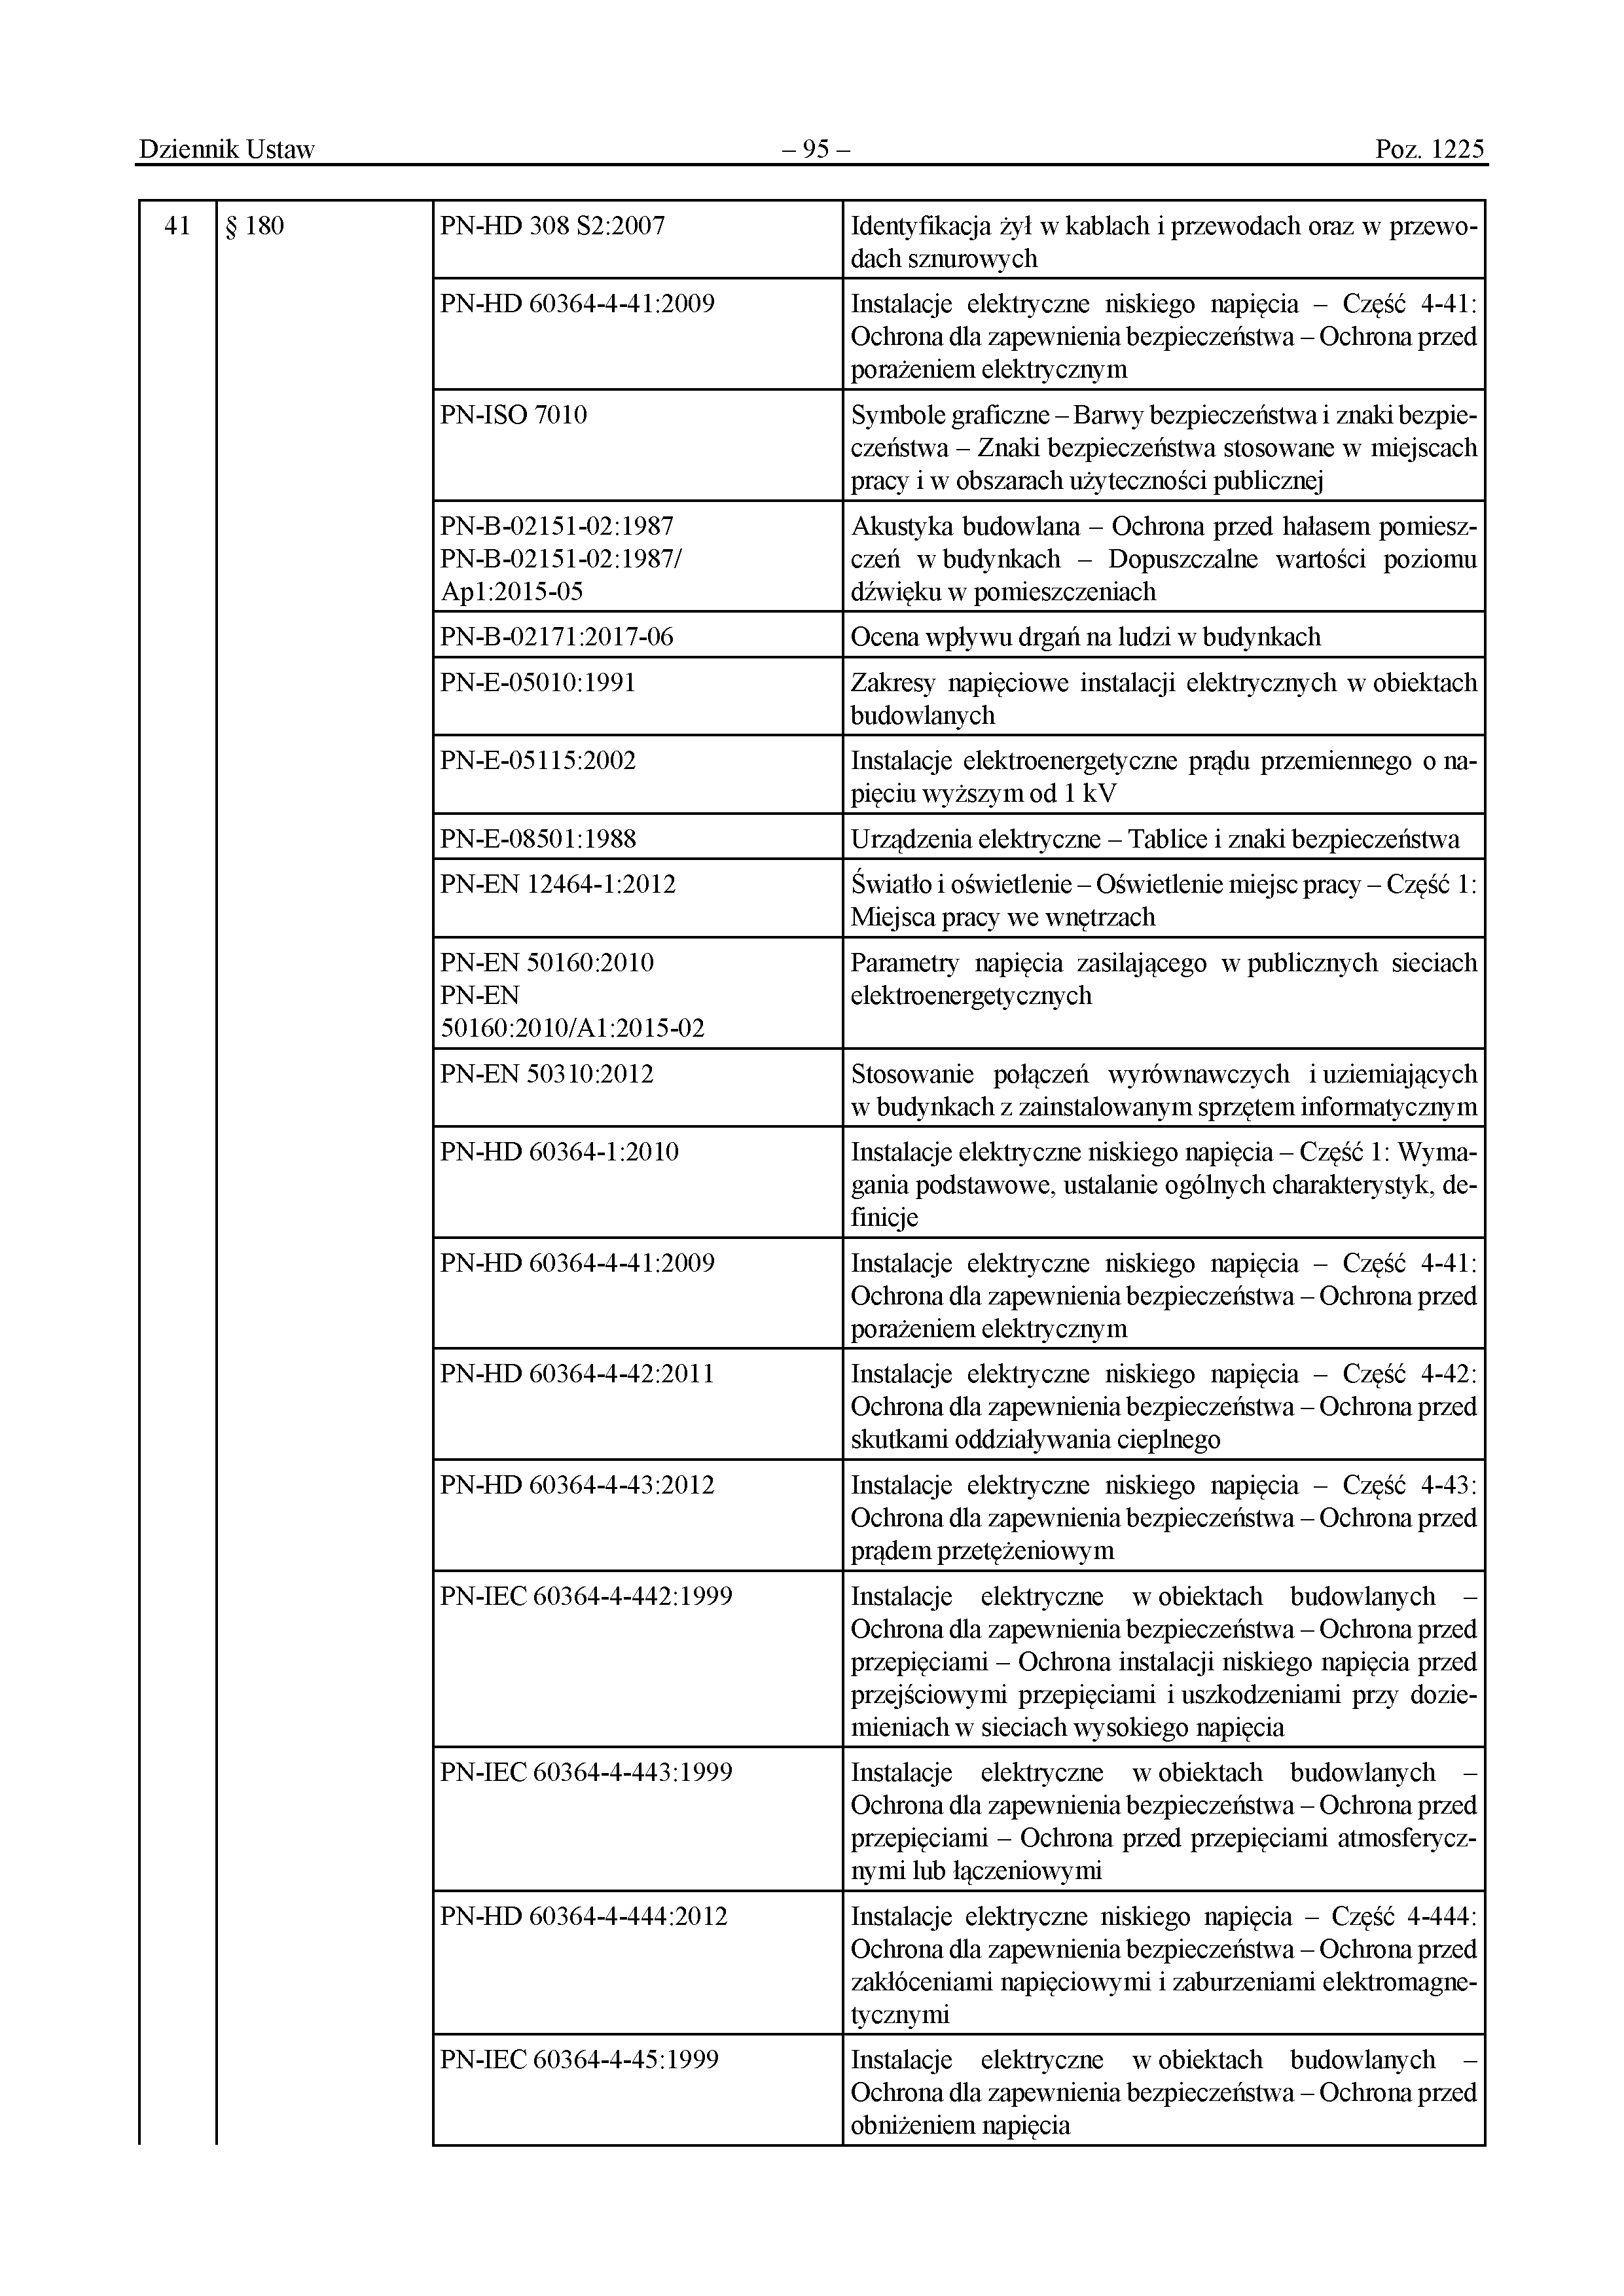 Wykaz polskich norm przywołanych w rozporządzeniu (s.6/13) - Załącznik do rozporządzenia Ministra Rozwoju i Technologii z dnia 12 kwietnia 2002 r. 